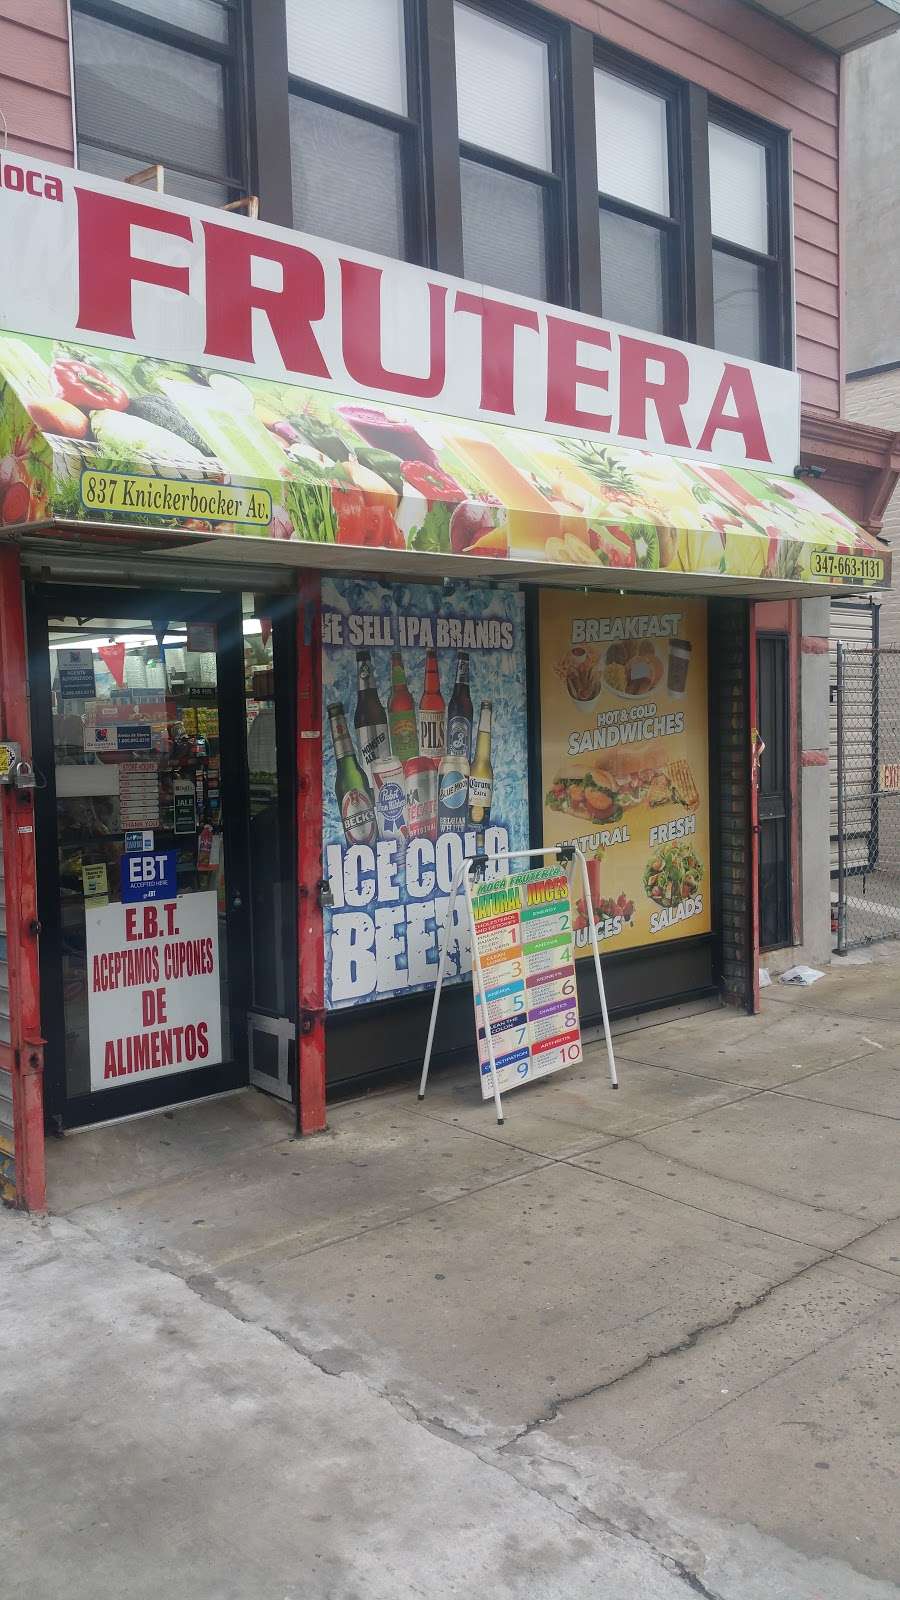 Moca Frutera | 837 Knickerbocker Ave, Brooklyn, NY 11207, USA